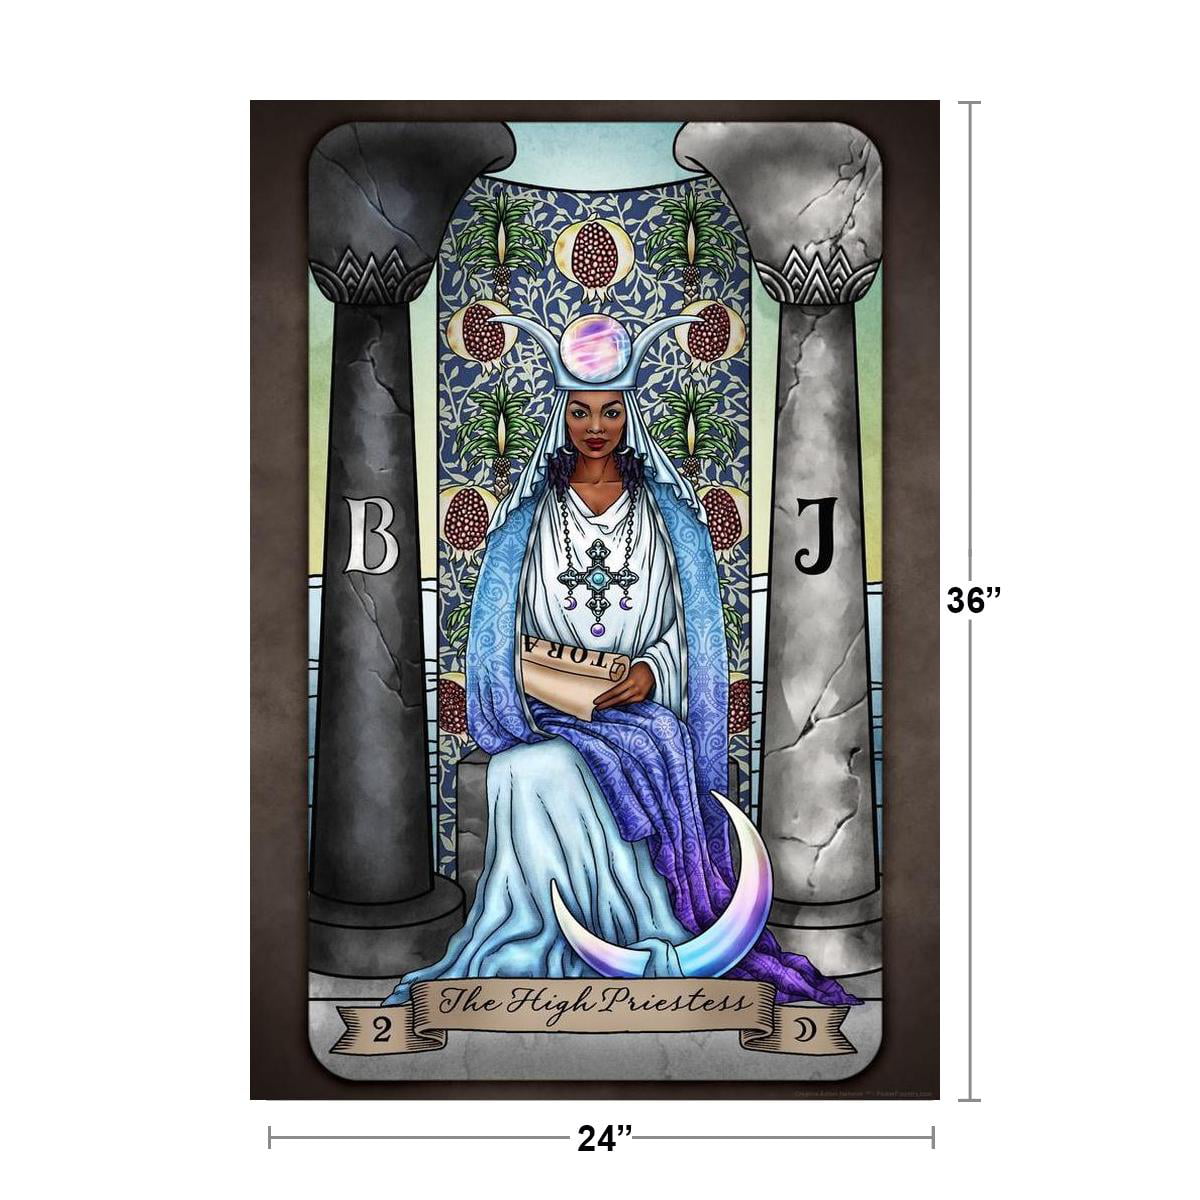 The High Priestess Tarot Card by Brigid Ashwood Luminous Tarot Deck Major Arcana Witchy Decor New Age Diversity Cool Huge Large Giant Art 36x54 - Walmart.com